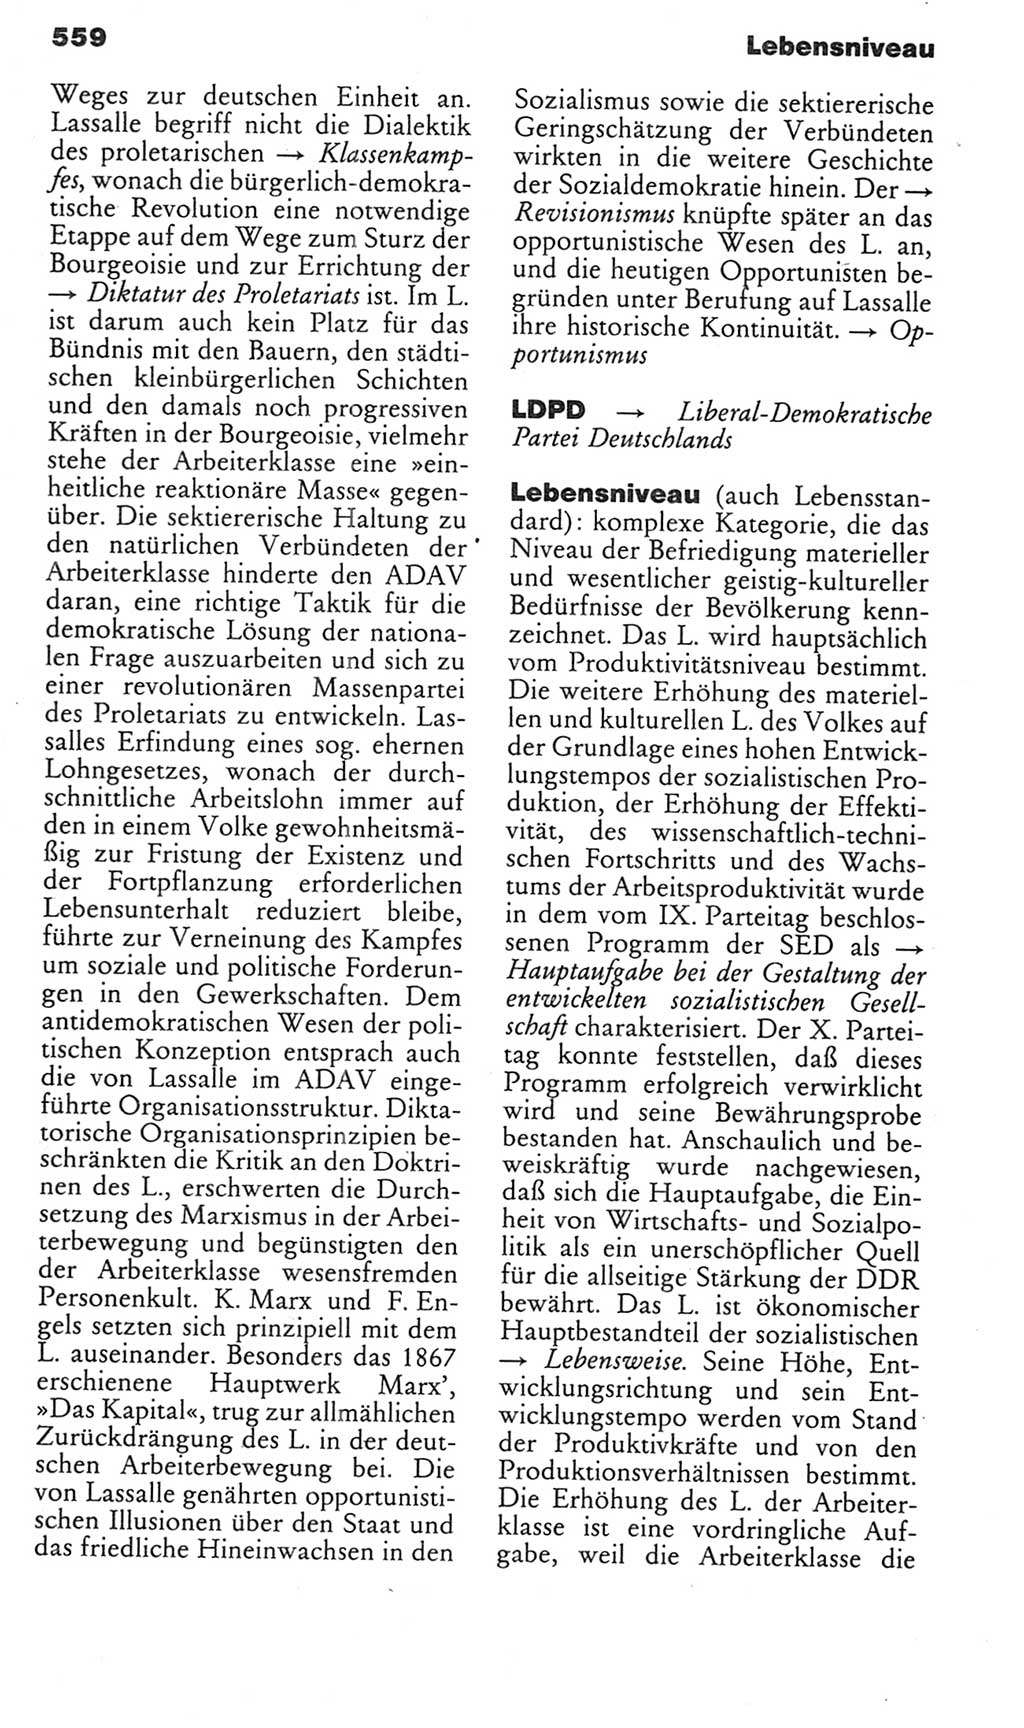 Kleines politisches Wörterbuch [Deutsche Demokratische Republik (DDR)] 1985, Seite 559 (Kl. pol. Wb. DDR 1985, S. 559)